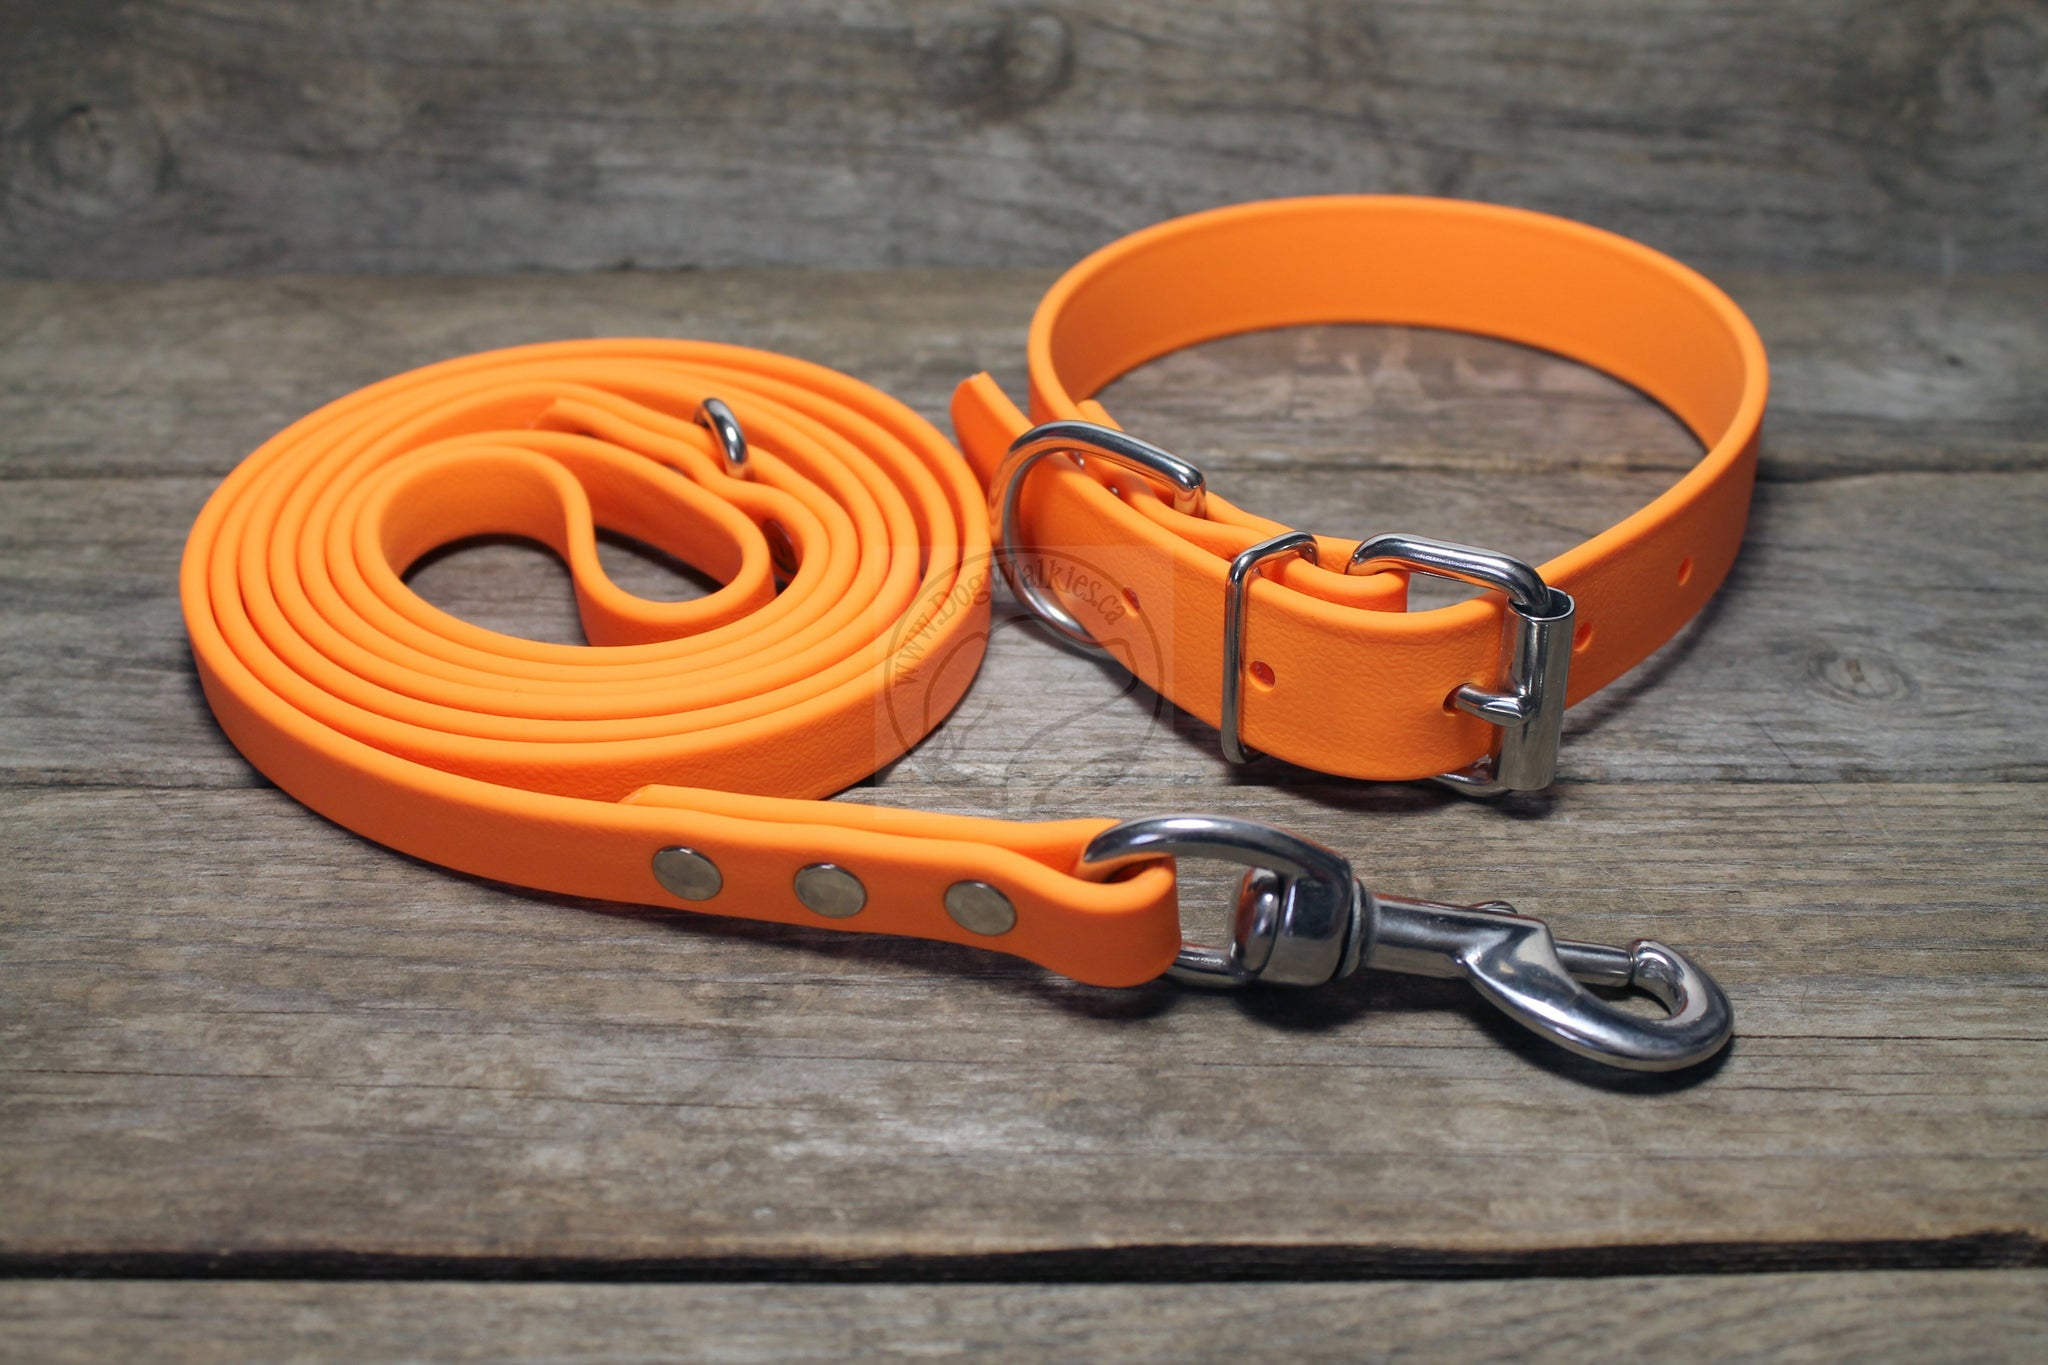 Bright Pumpkin Orange Biothane Dog Collar - 1 inch (25mm) wide